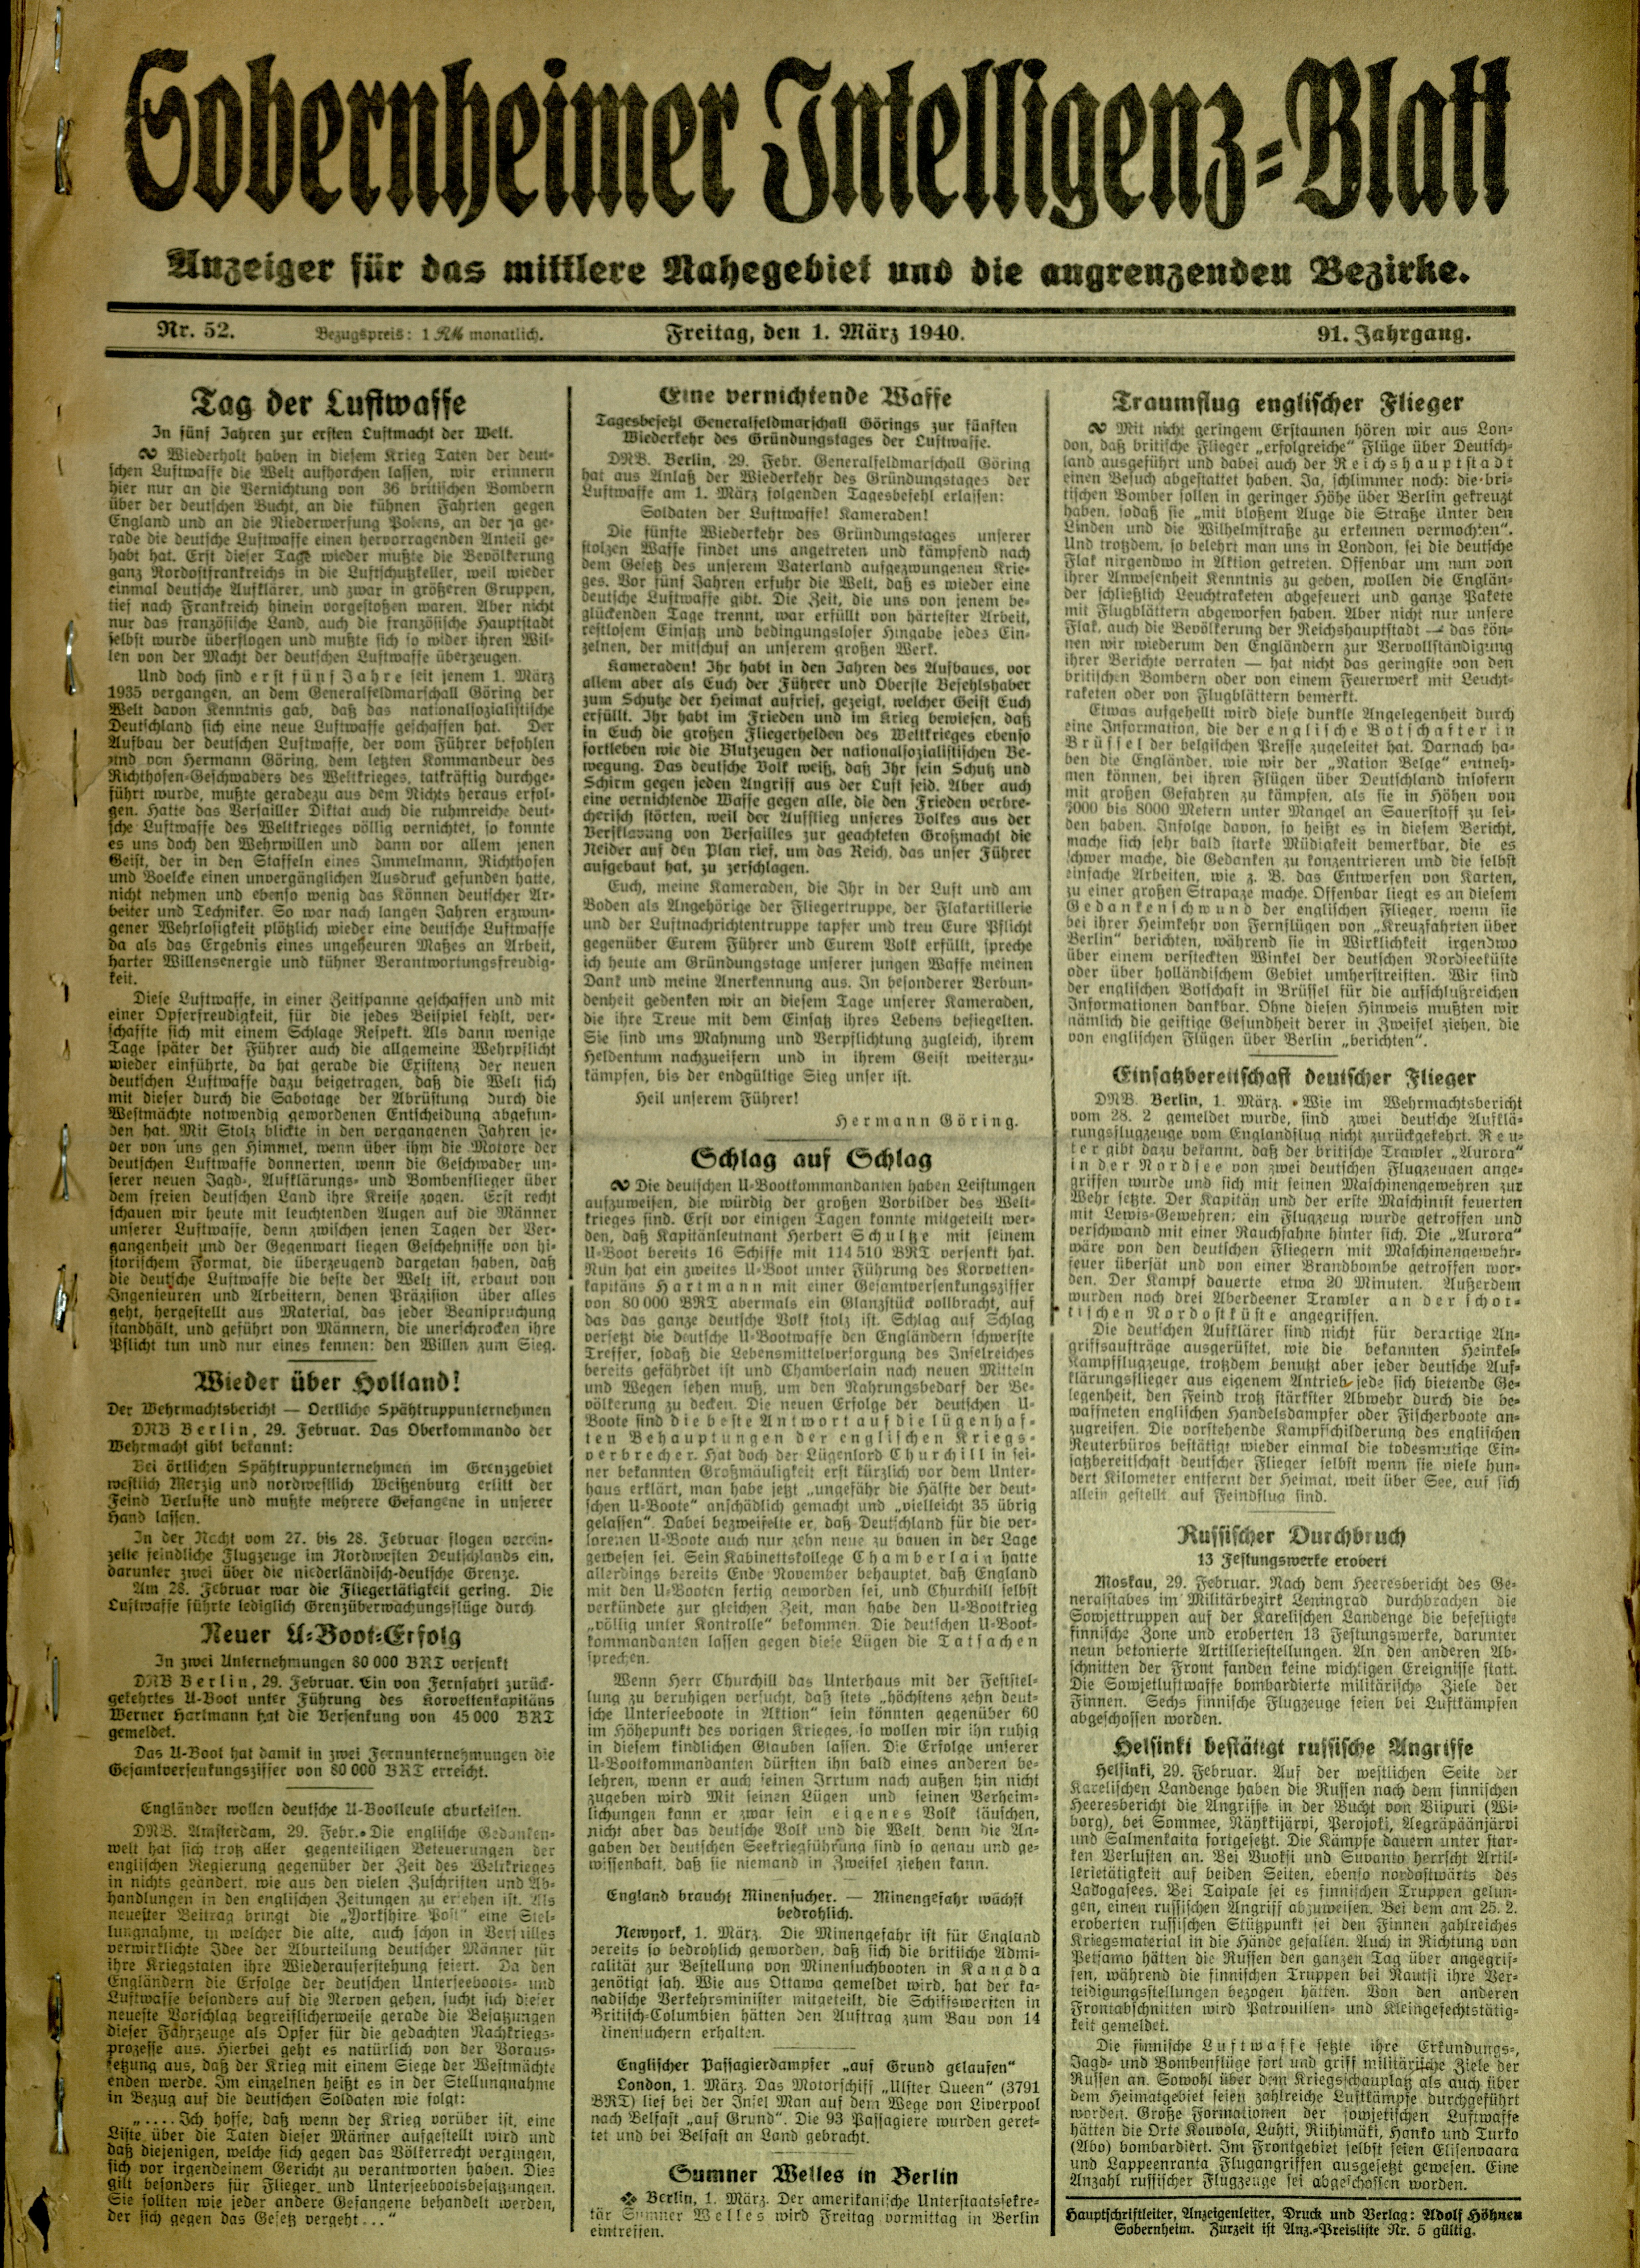 Zeitung: Sobernheimer Intelligenzblatt; Mai 1940, Jg. 91 Nr. 102 (Heimatmuseum Bad Sobernheim CC BY-NC-SA)